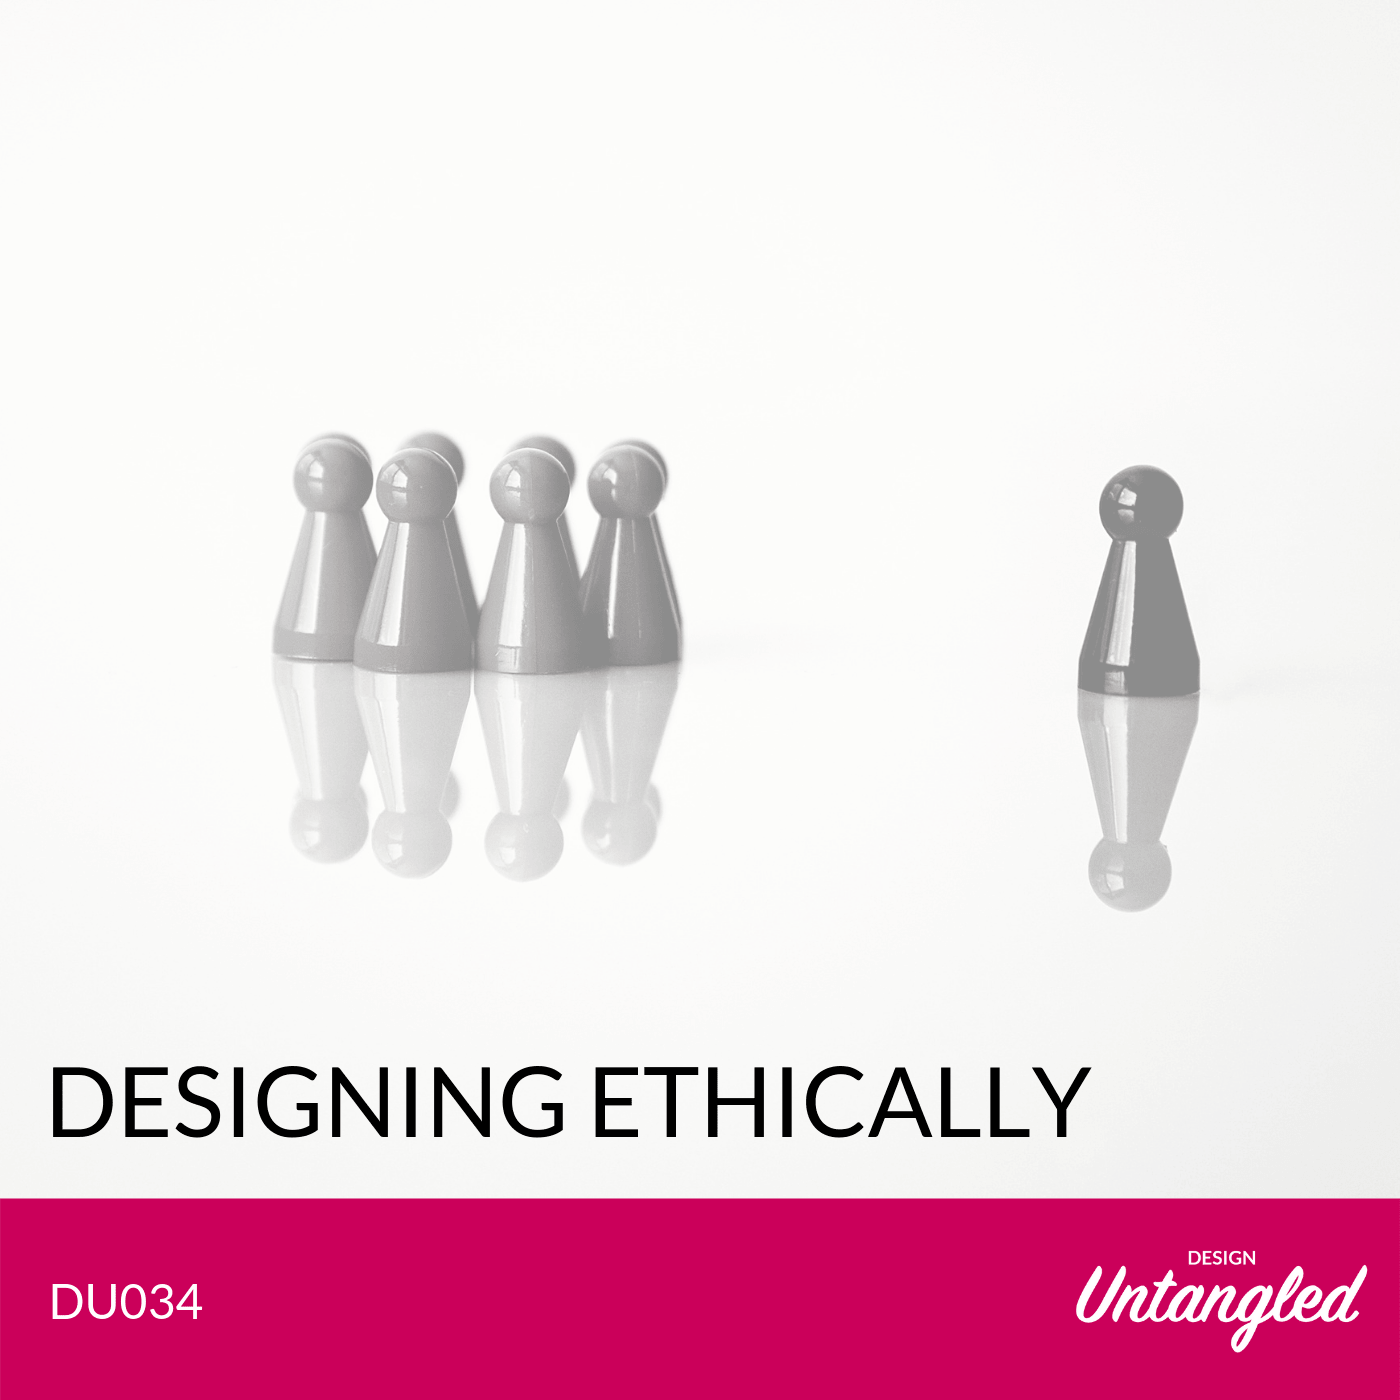 DU034 – Designing ethically